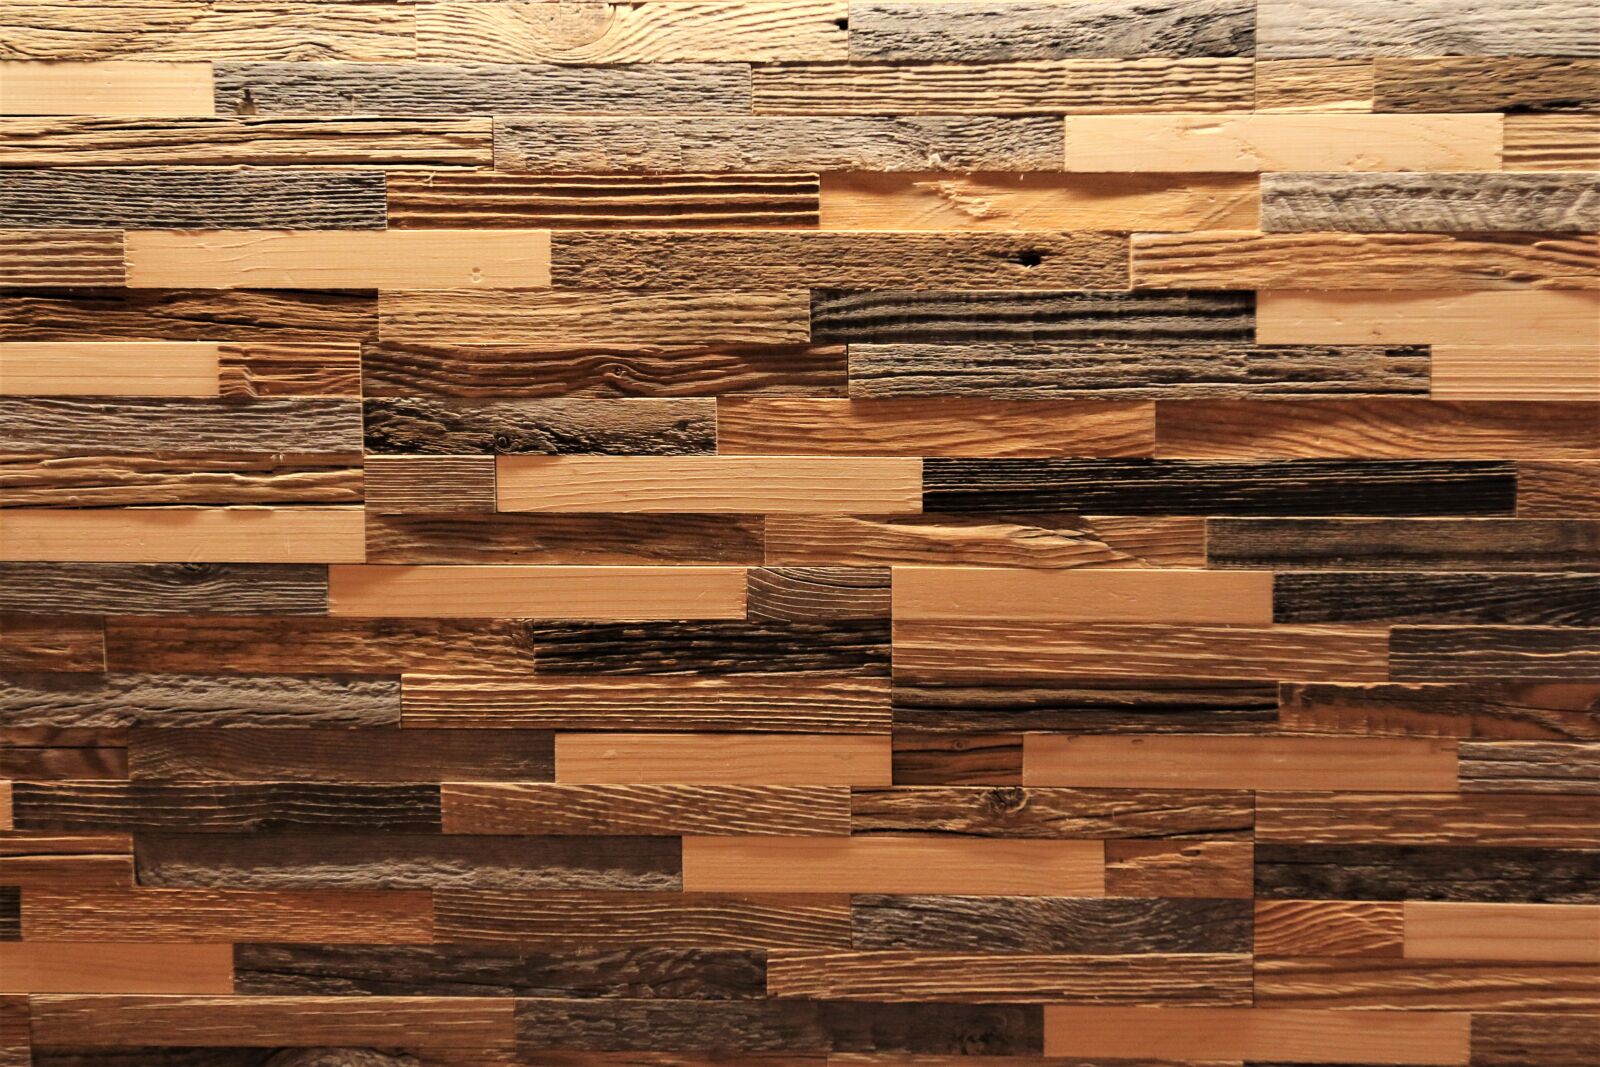 Canon EOS 70D sample photo. Wood, wooden wall, facade photography